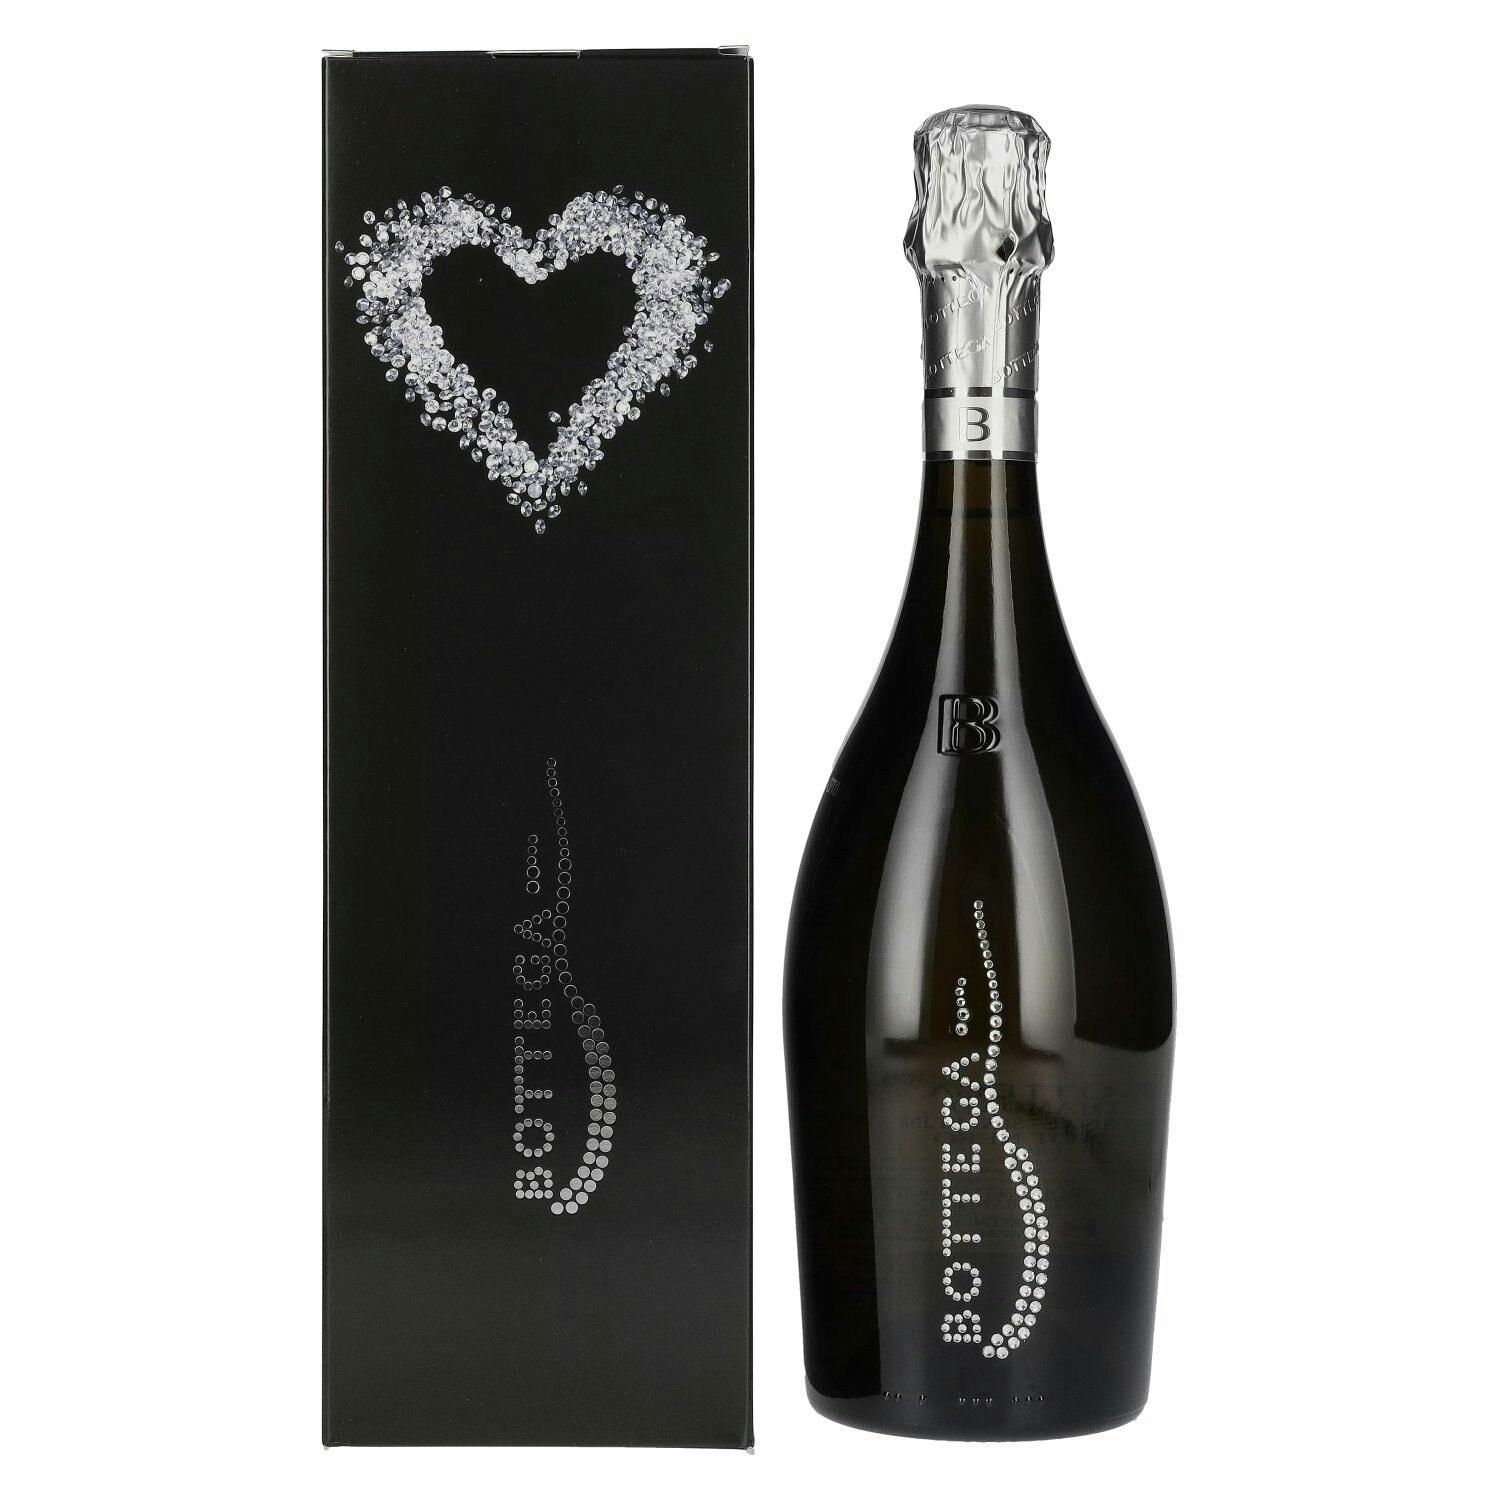 Bottega DIAMOND Pinot Nero Spumante Brut 12% Vol. 0,75l in Giftbox